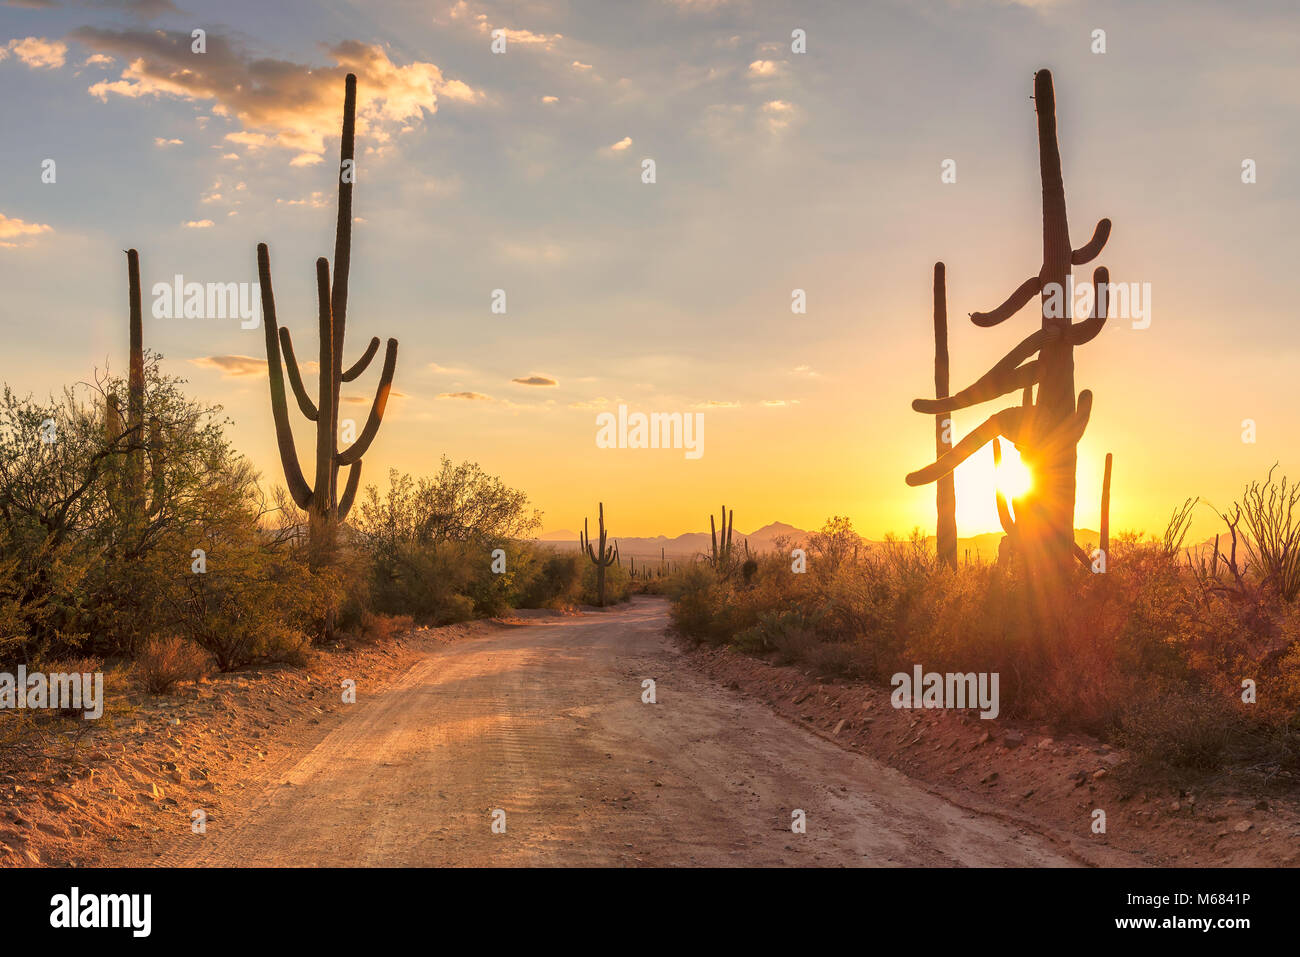 Travel to Arizona desert at sunset with Saguaro cacti in Sonoran Desert near Phoenix. Stock Photo